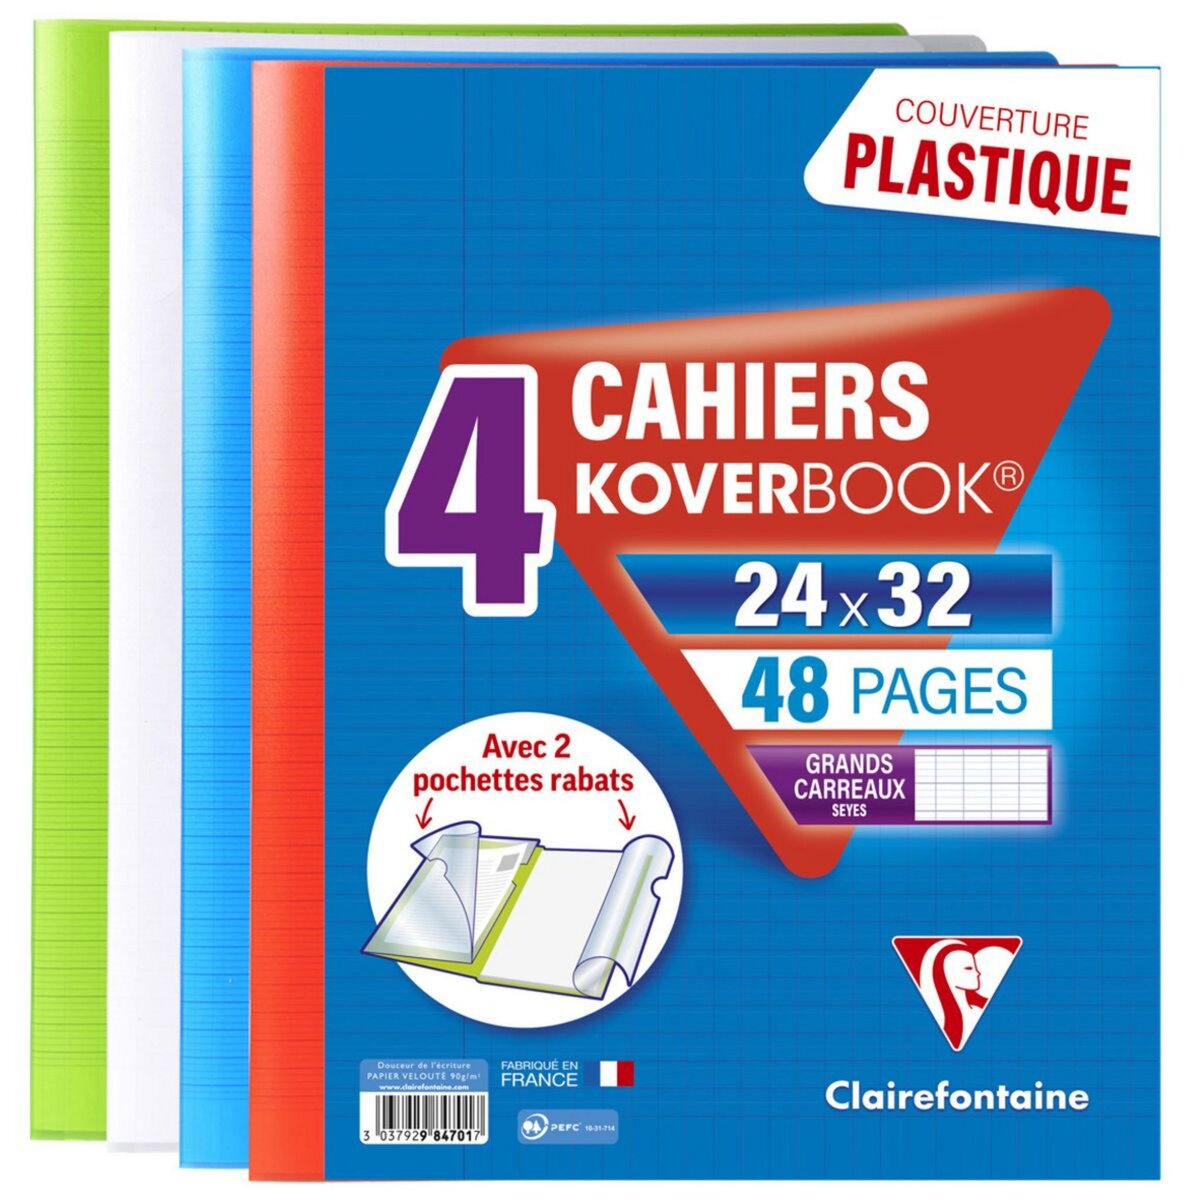 CLAIREFONTAINE Lot de 4 cahiers piqués polypro Koverbook 24x32cm 48 pages grands carreaux Seyes